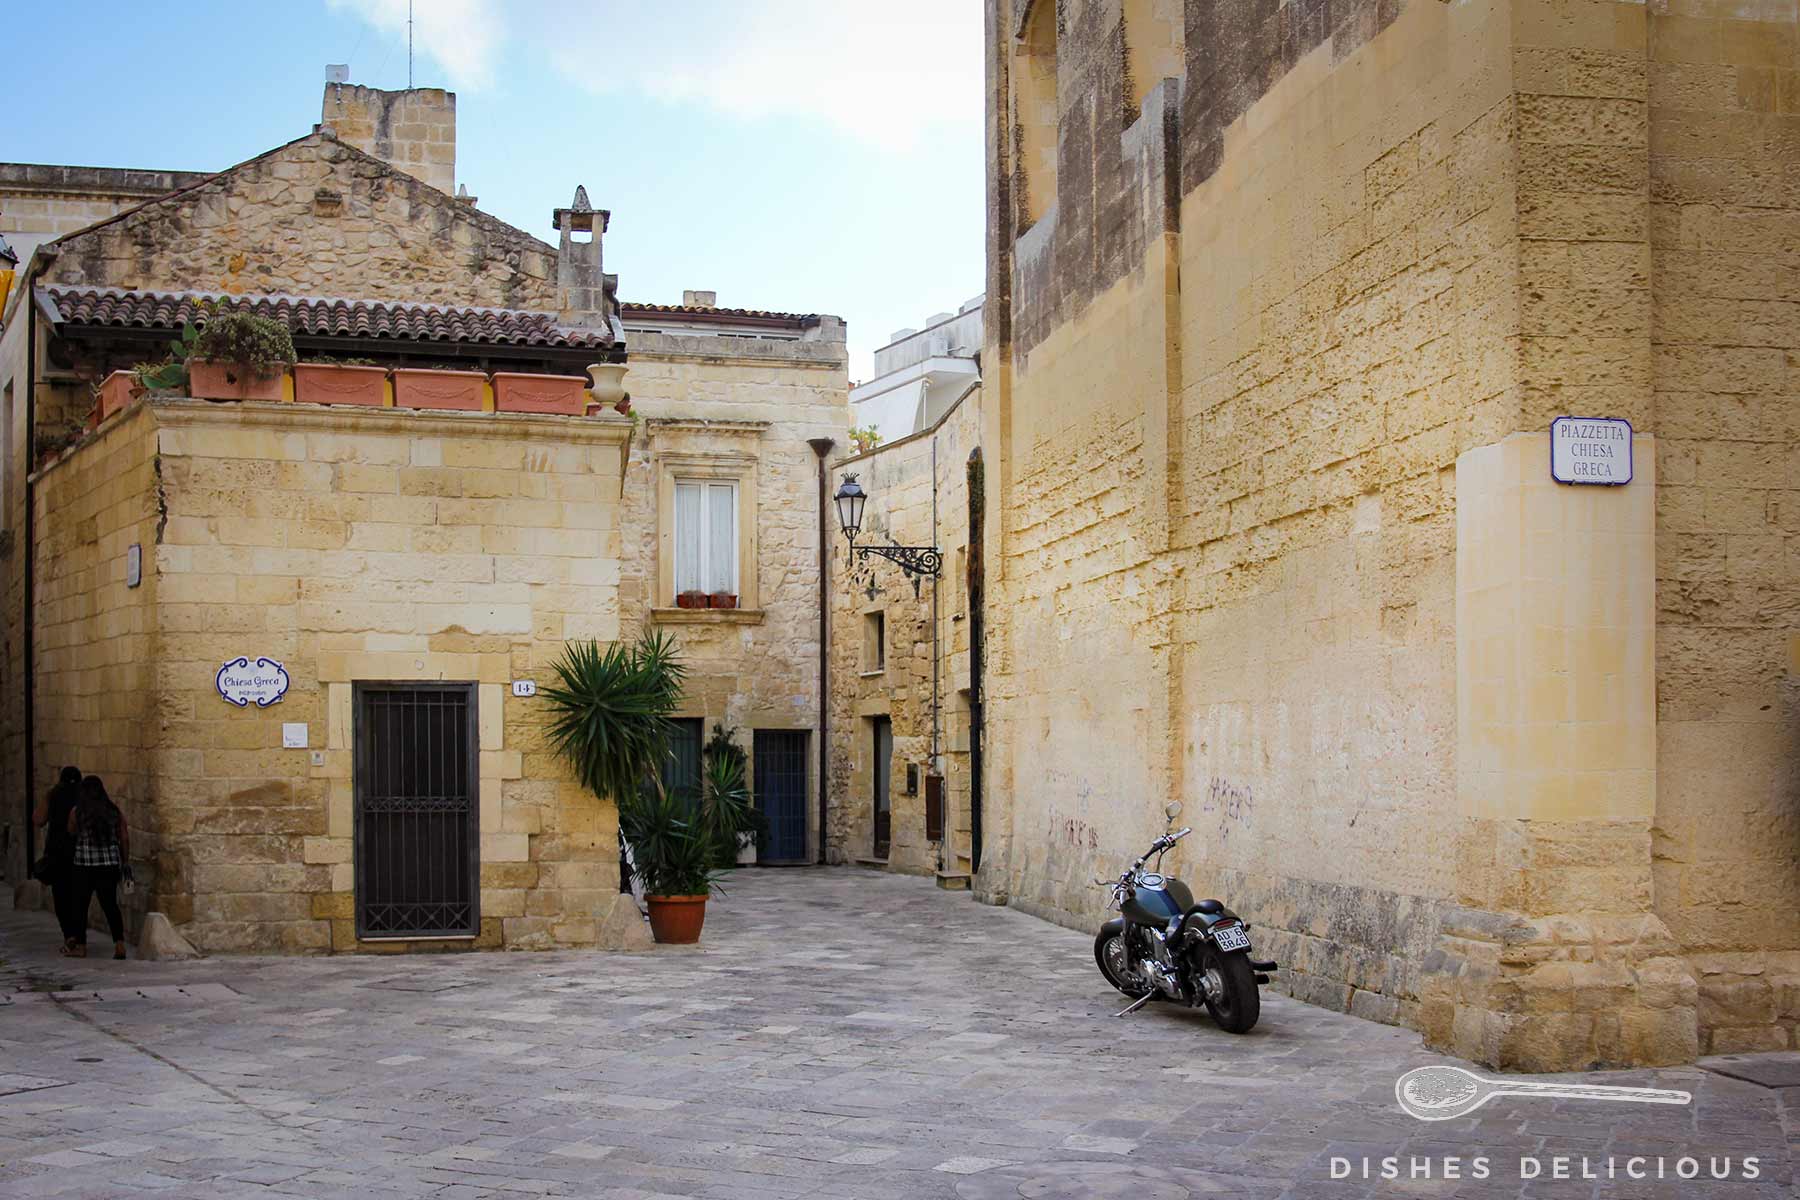 Die kleine Piazzetta Chiesa Greca, an der ein Motorrad geparkt ist.